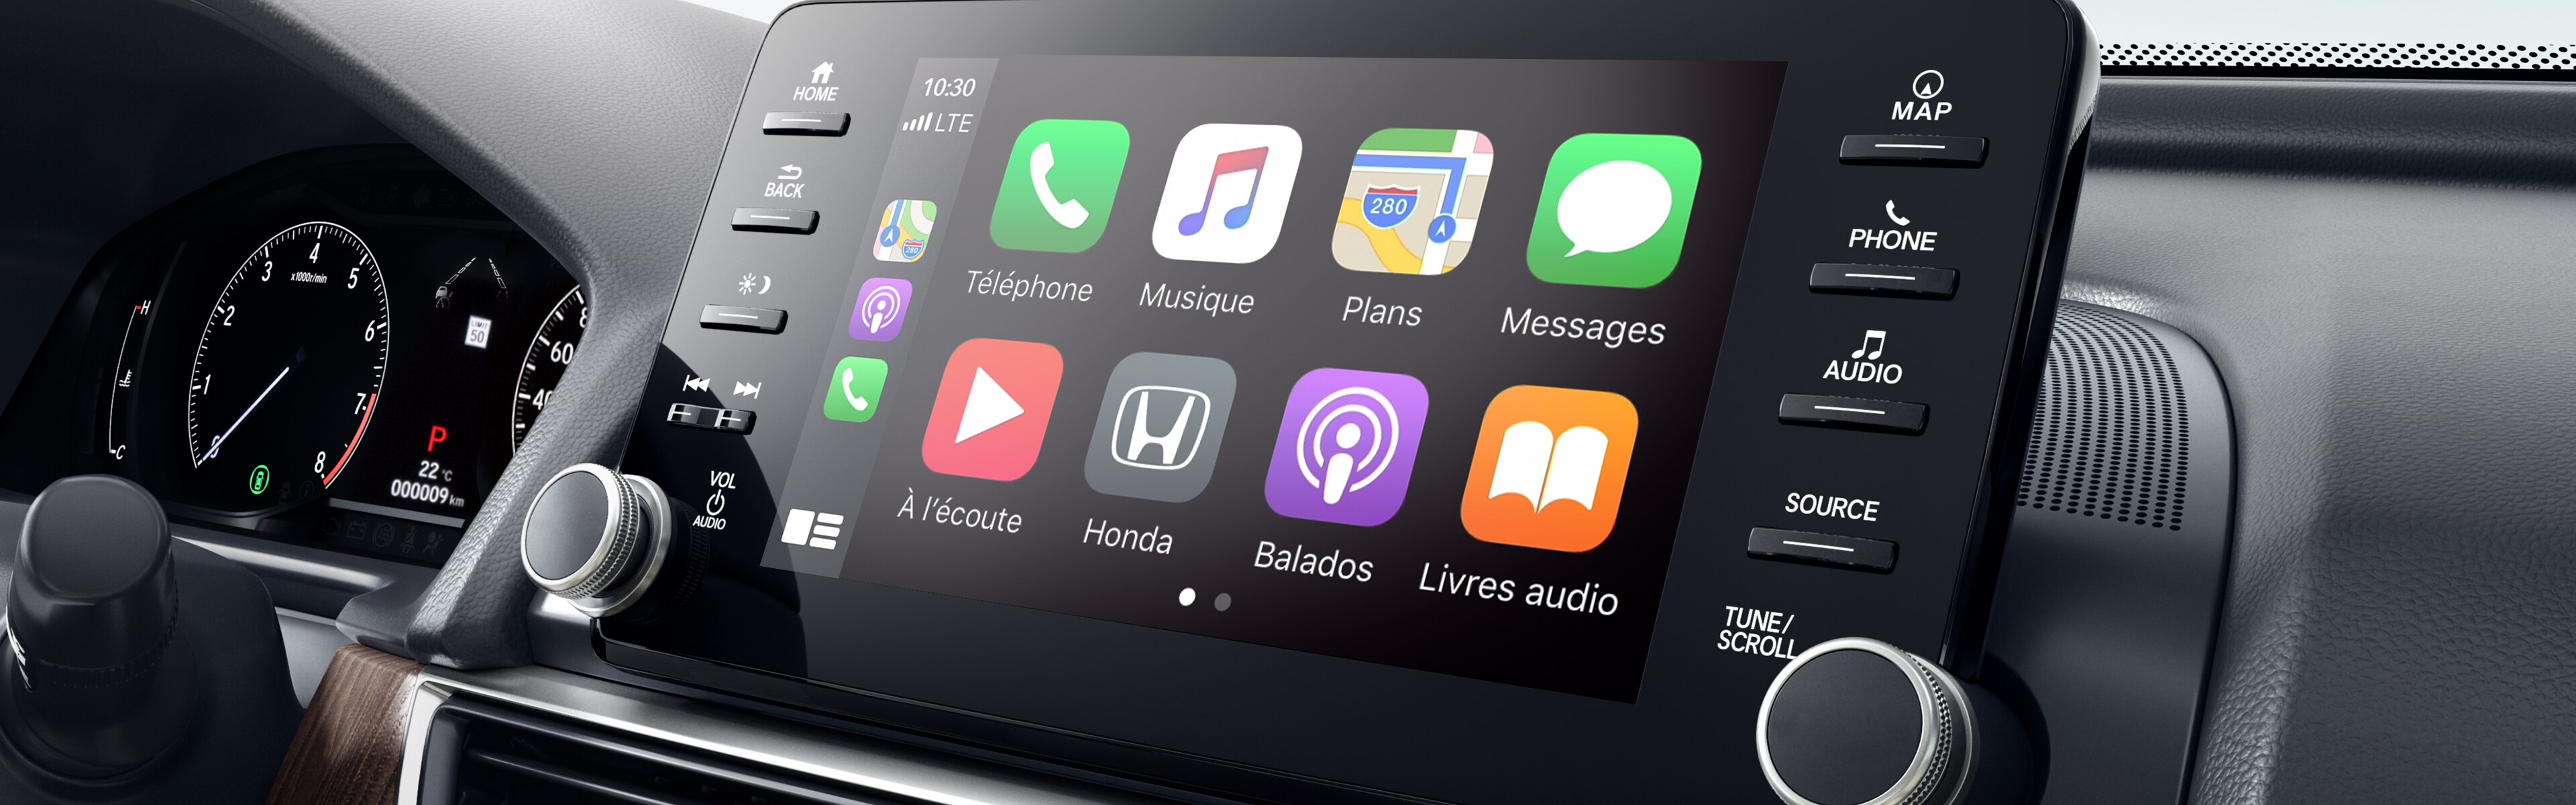 Image du système audio sur affichage de la Honda Accord berline 2020.